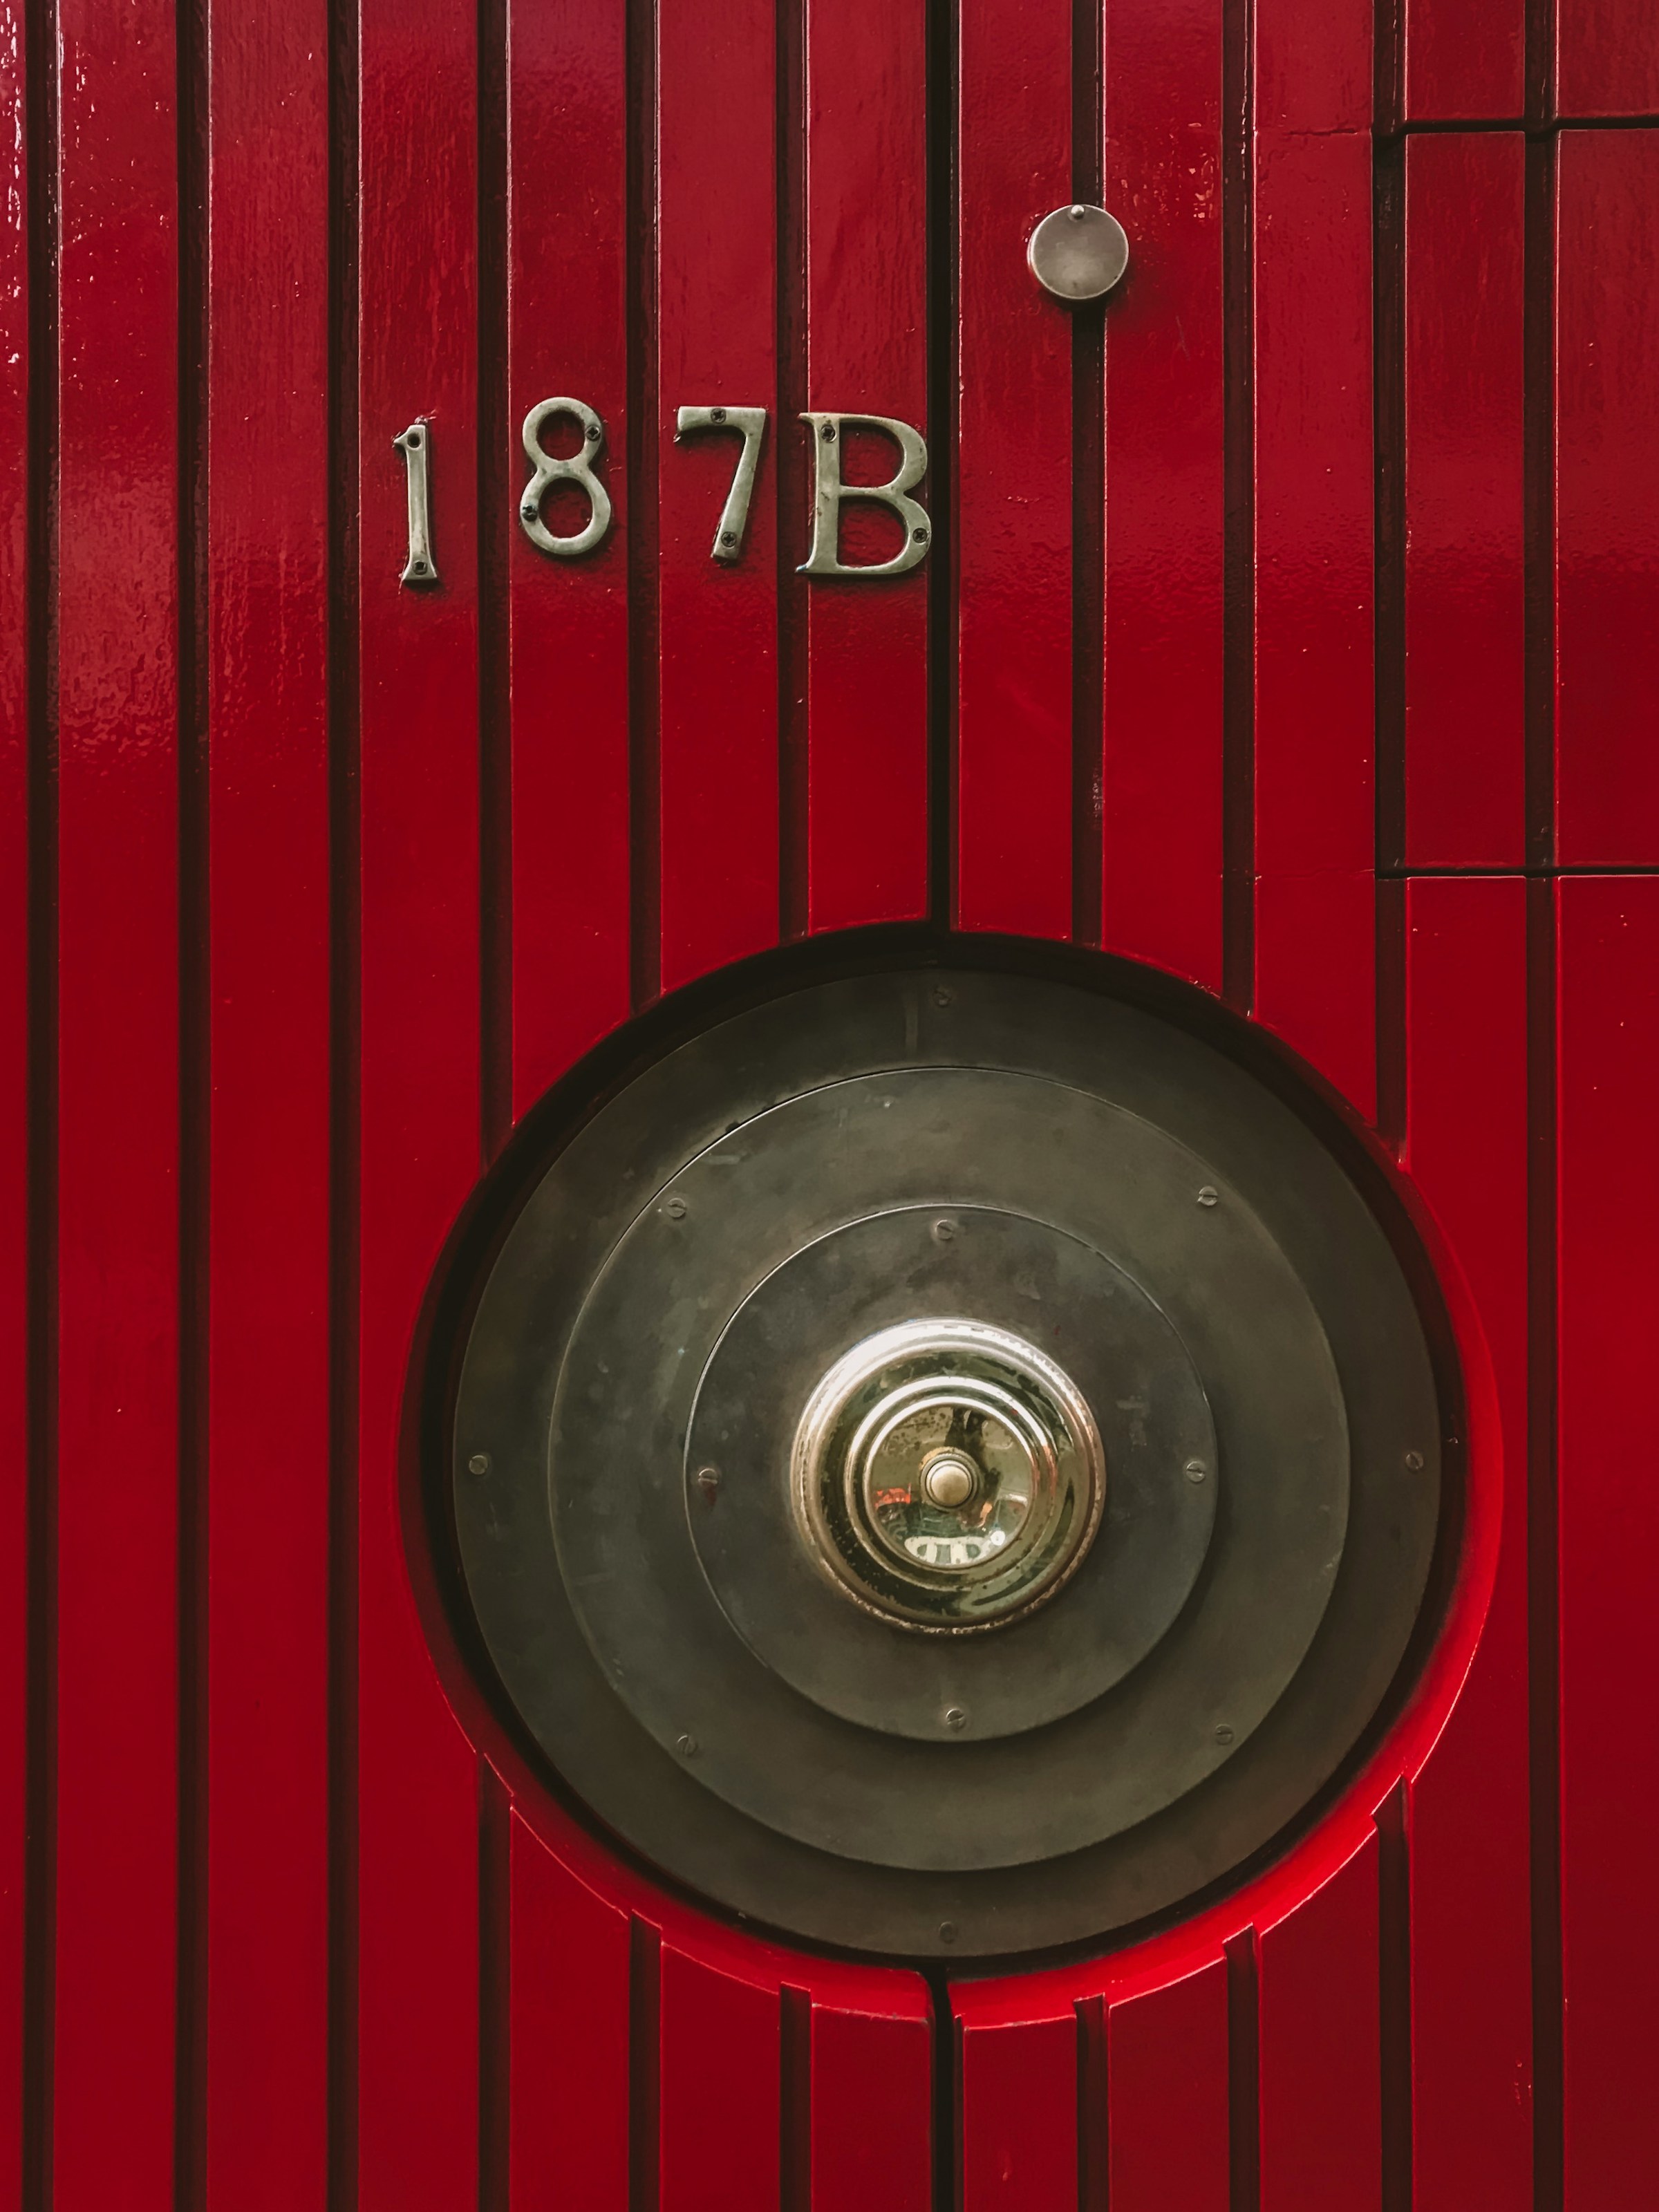 A red door with a metal doorknob | Source: Unsplash